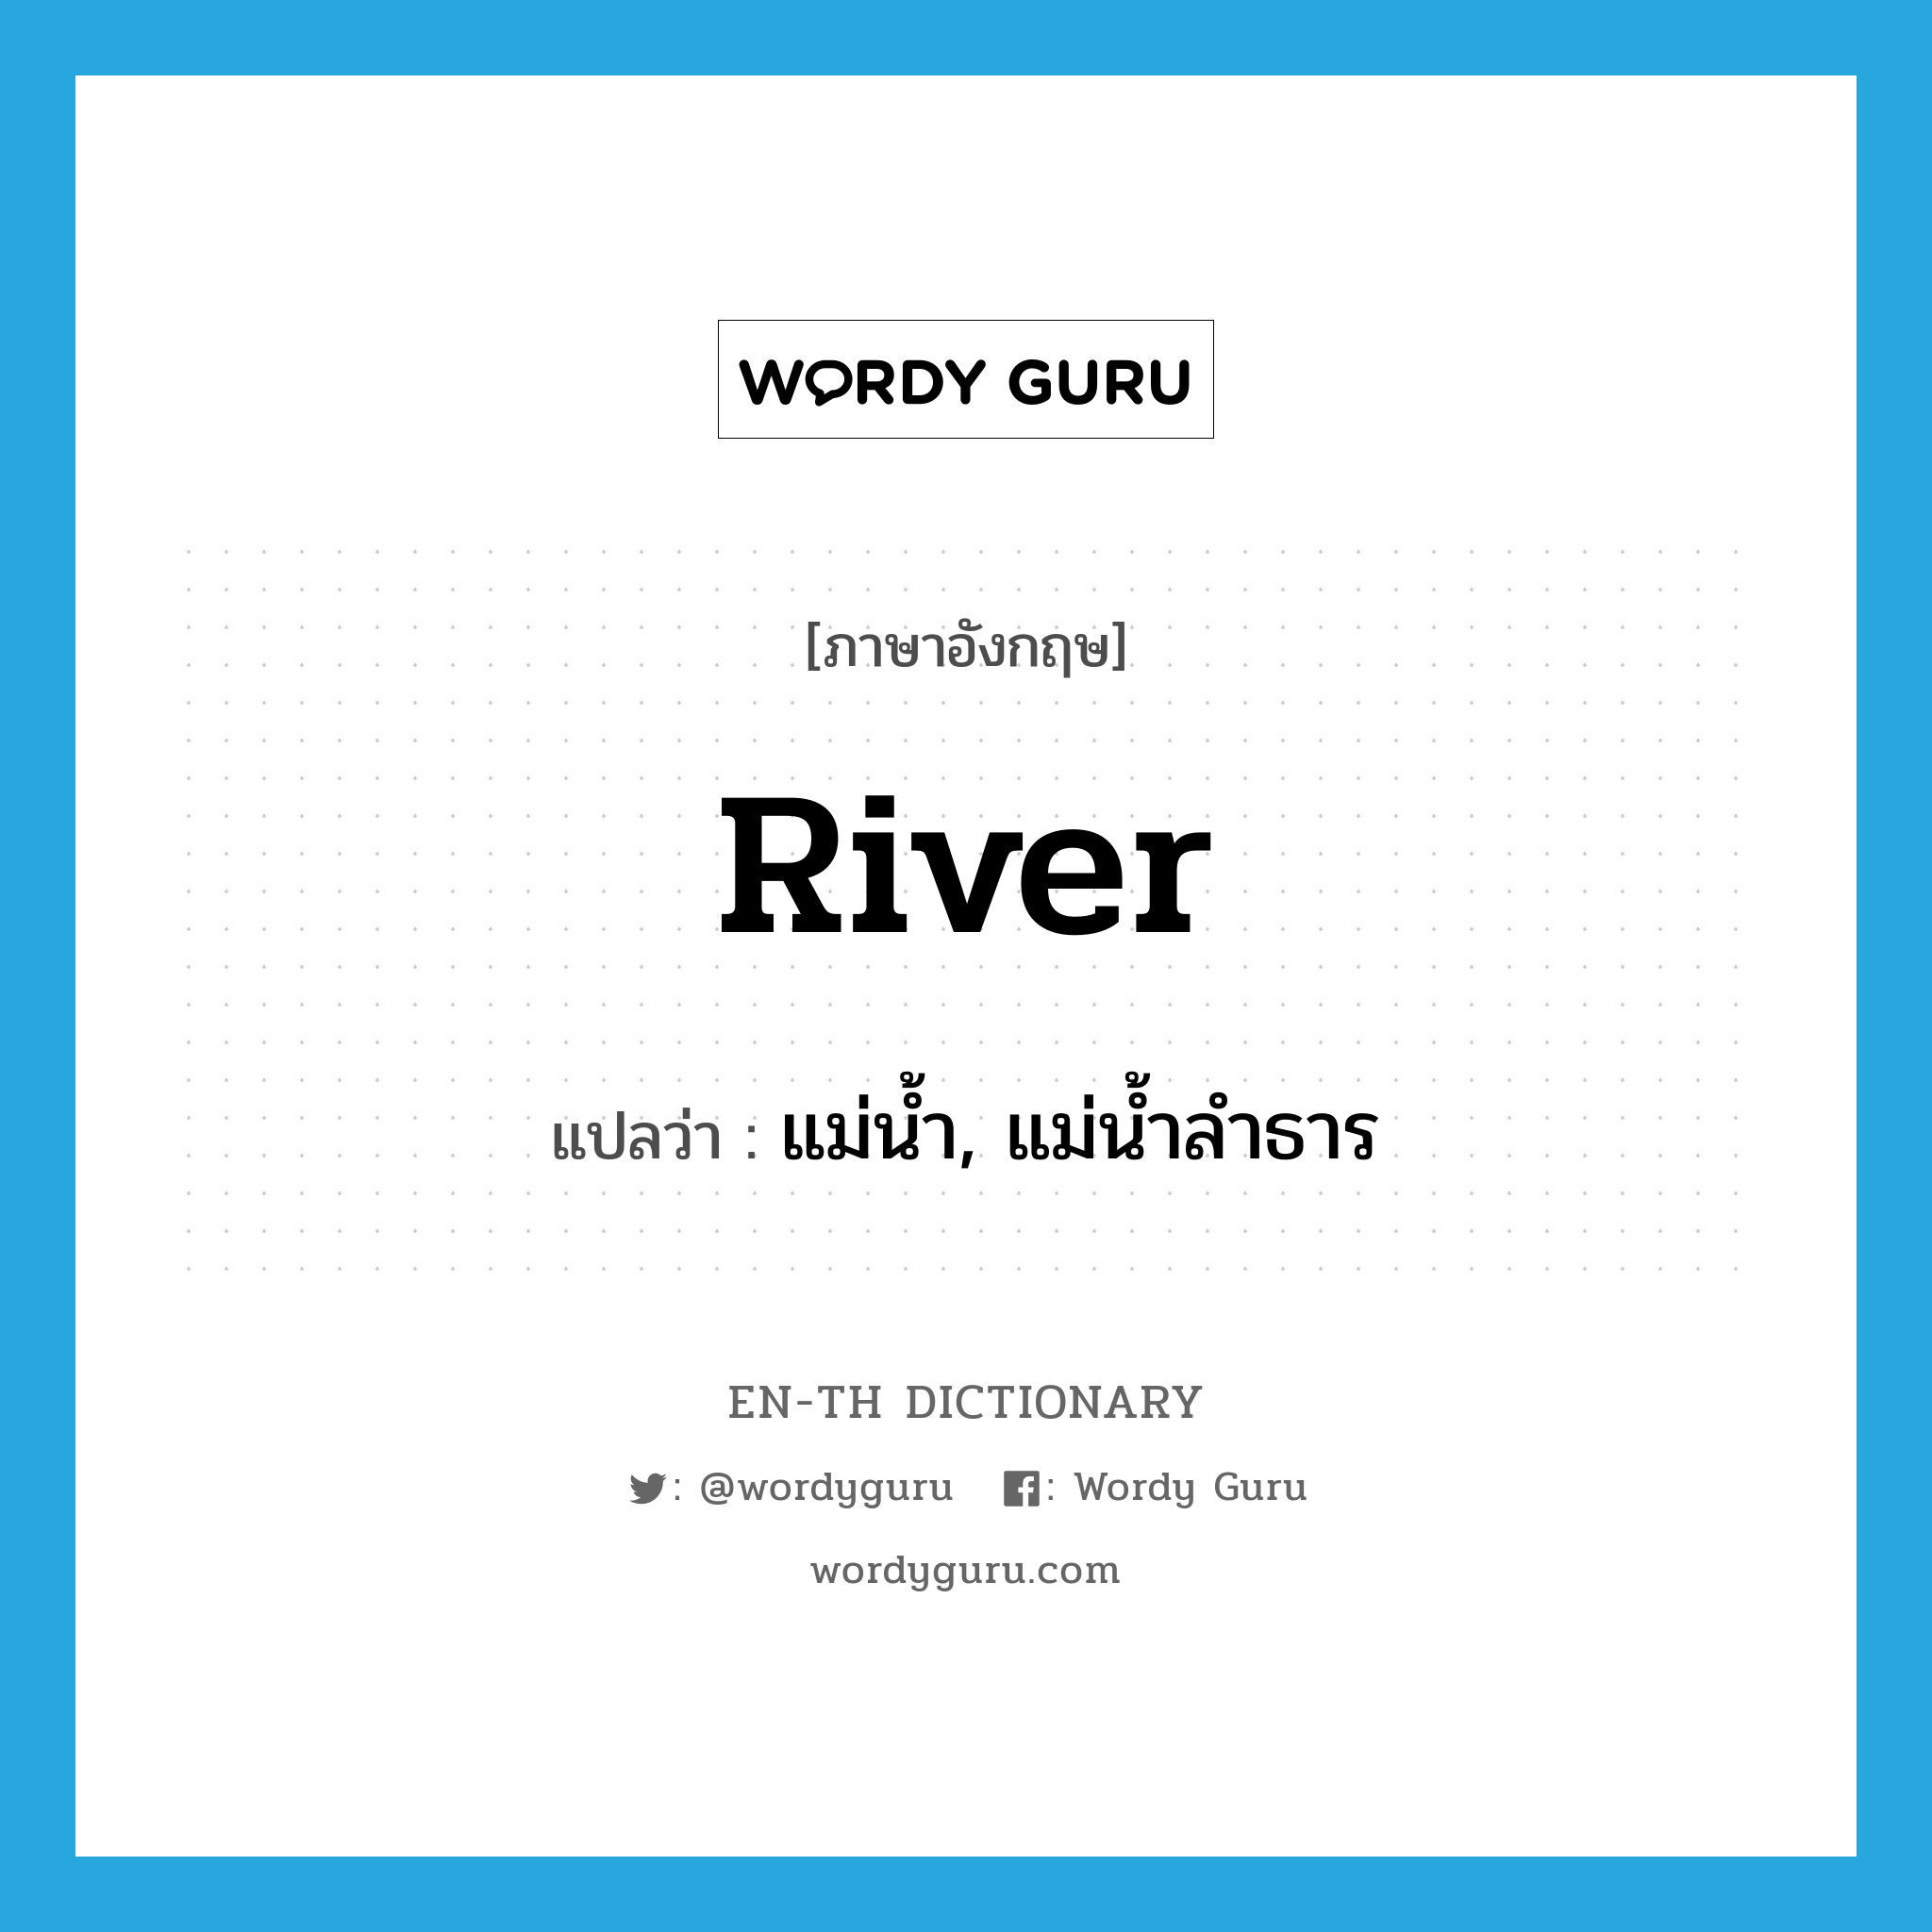 แม่น้ำ, แม่น้ำลำธาร ภาษาอังกฤษ?, คำศัพท์ภาษาอังกฤษ แม่น้ำ, แม่น้ำลำธาร แปลว่า river ประเภท N หมวด N